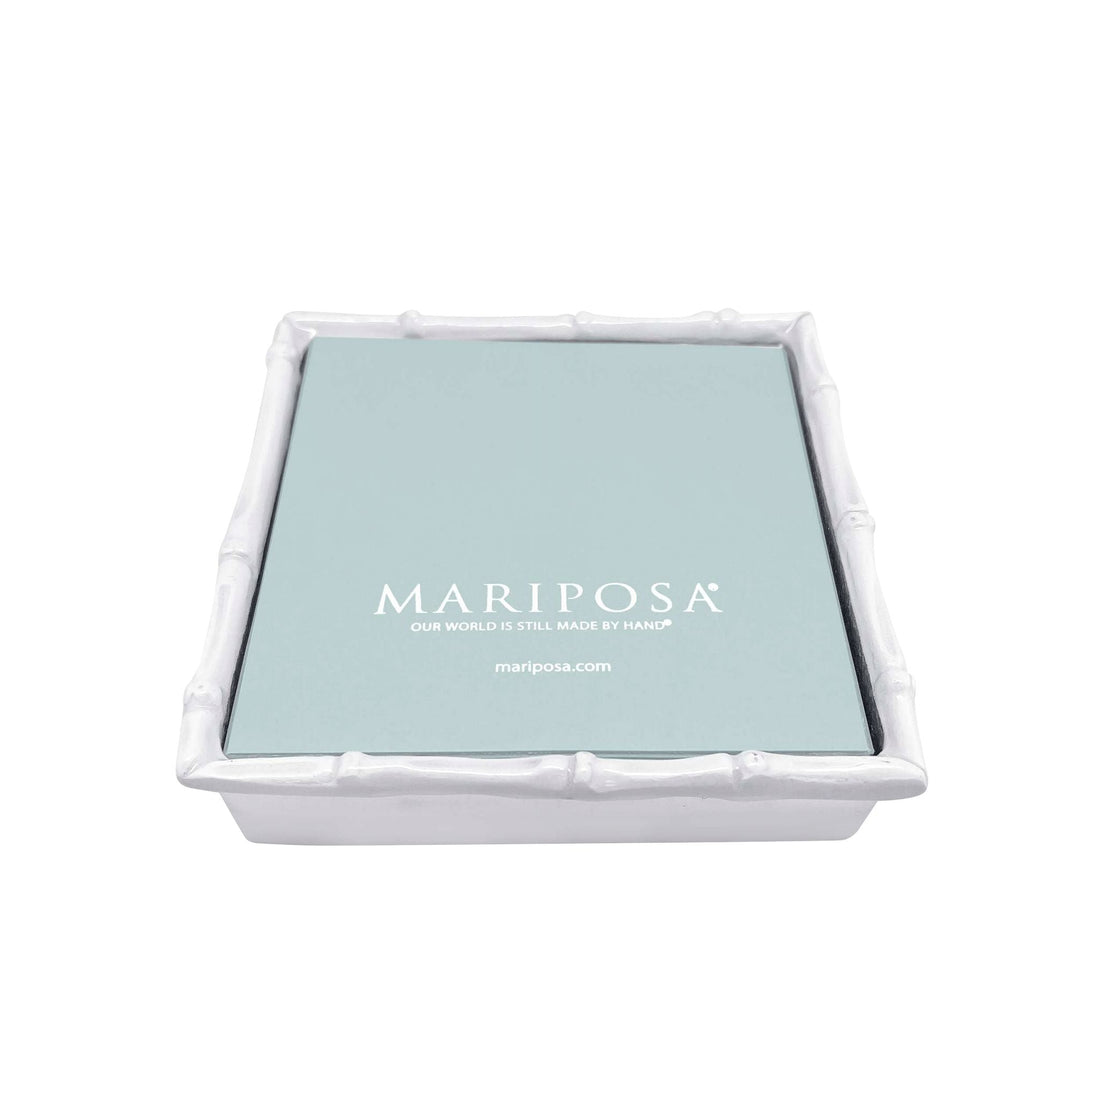 Bamboo White Napkin Box with Insert- | Mariposa